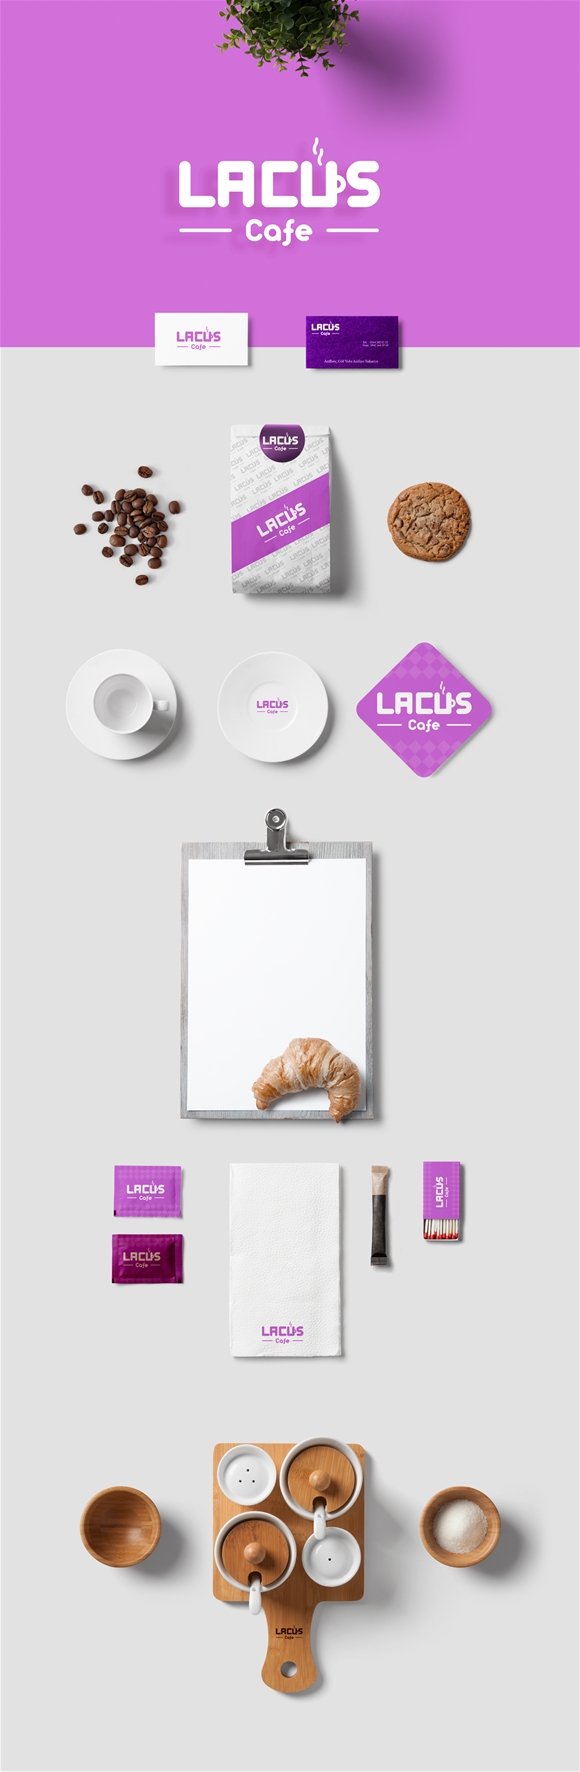 Lacus Cafe